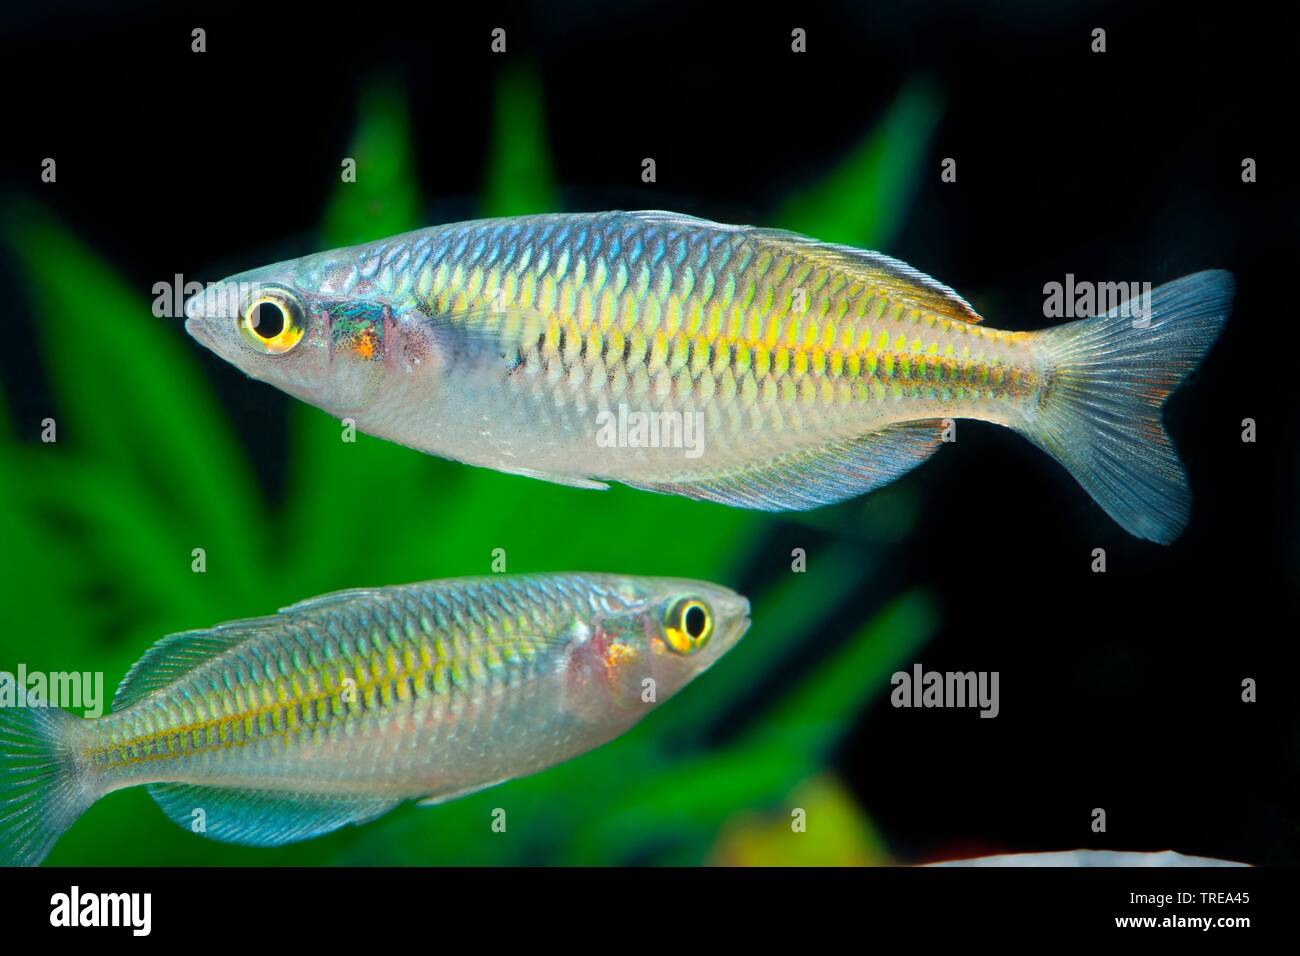 Boeseman's rainbowfish, Boesemani rainbowfish (Melanotaenia boesemani), swimming, side view Stock Photo